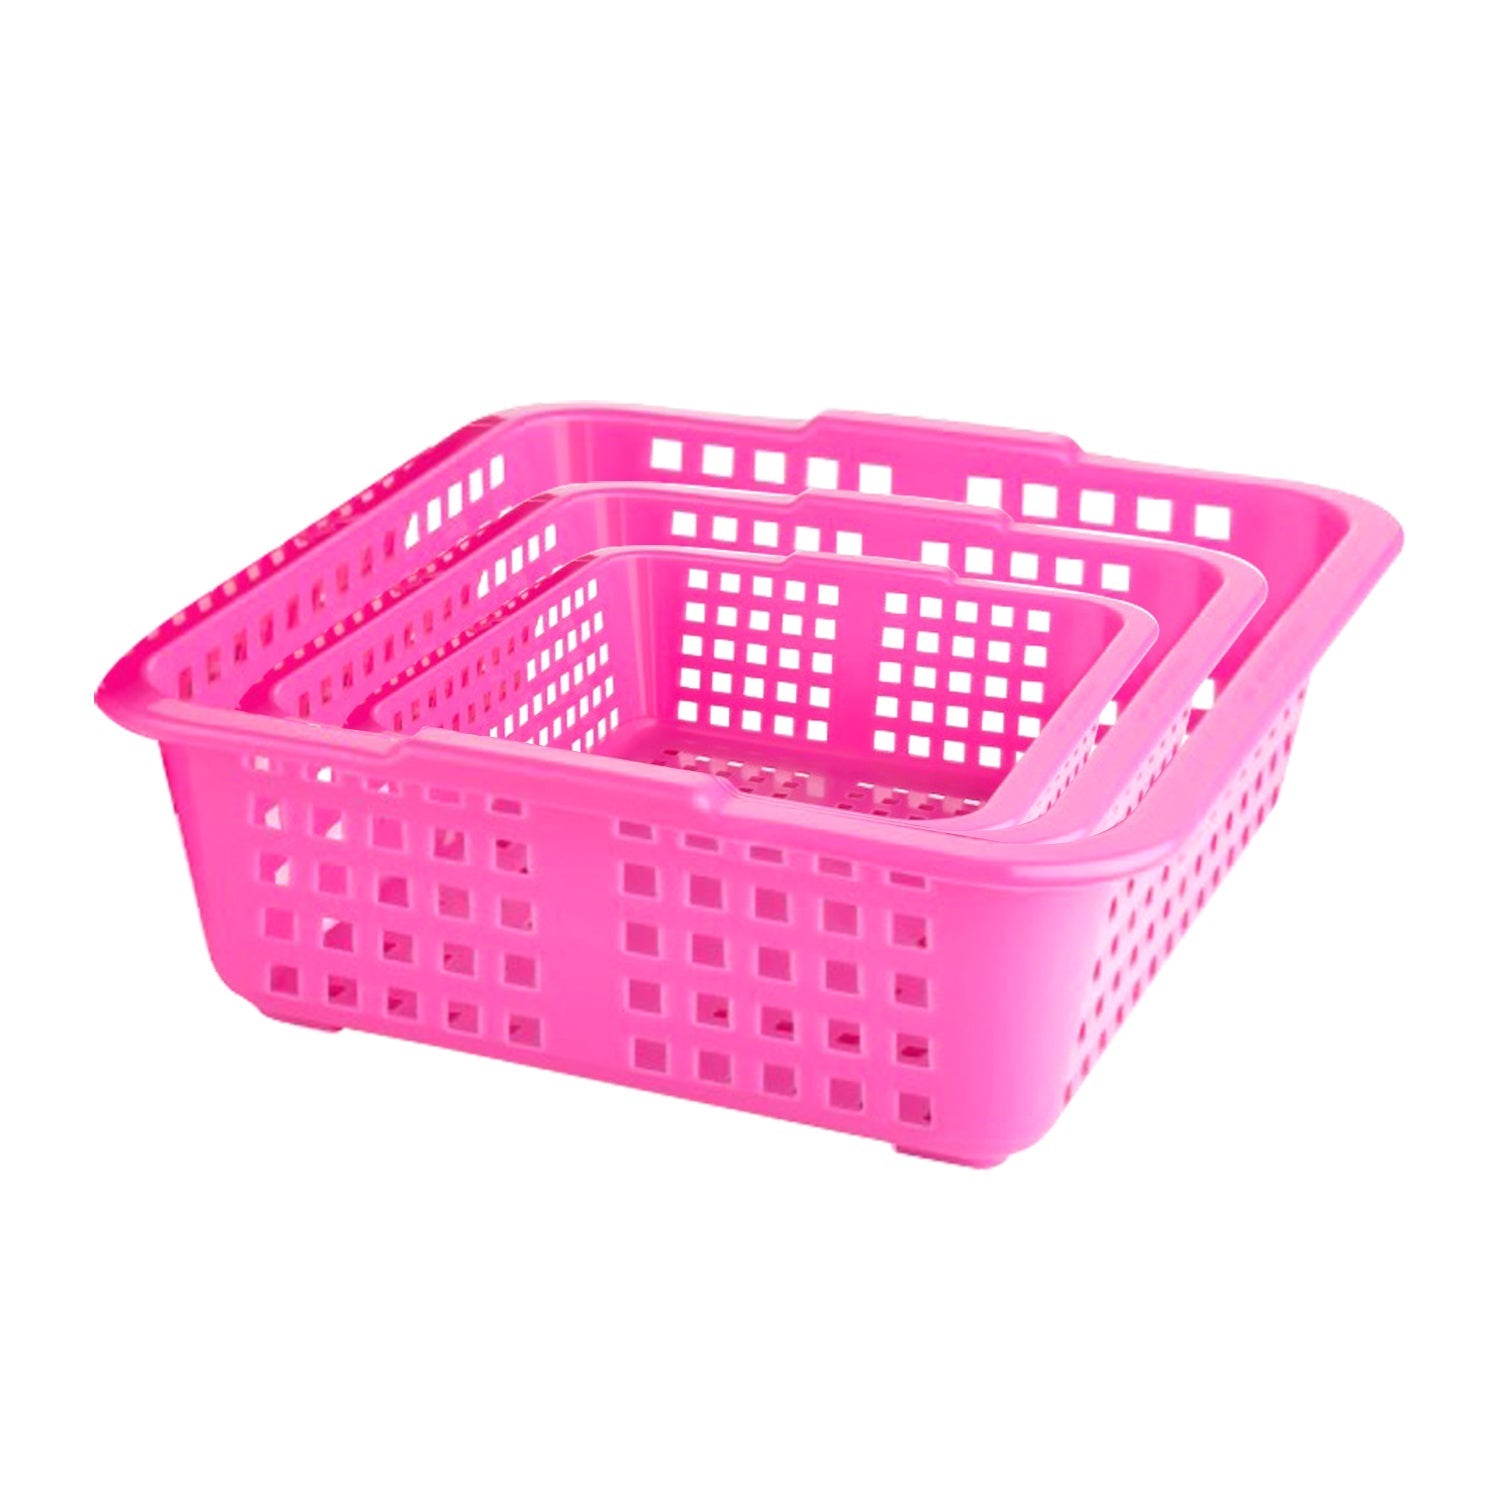 2484 Plastic Multiple Size Cane Fruit Baskets (3 Size Large, Medium, Small) 